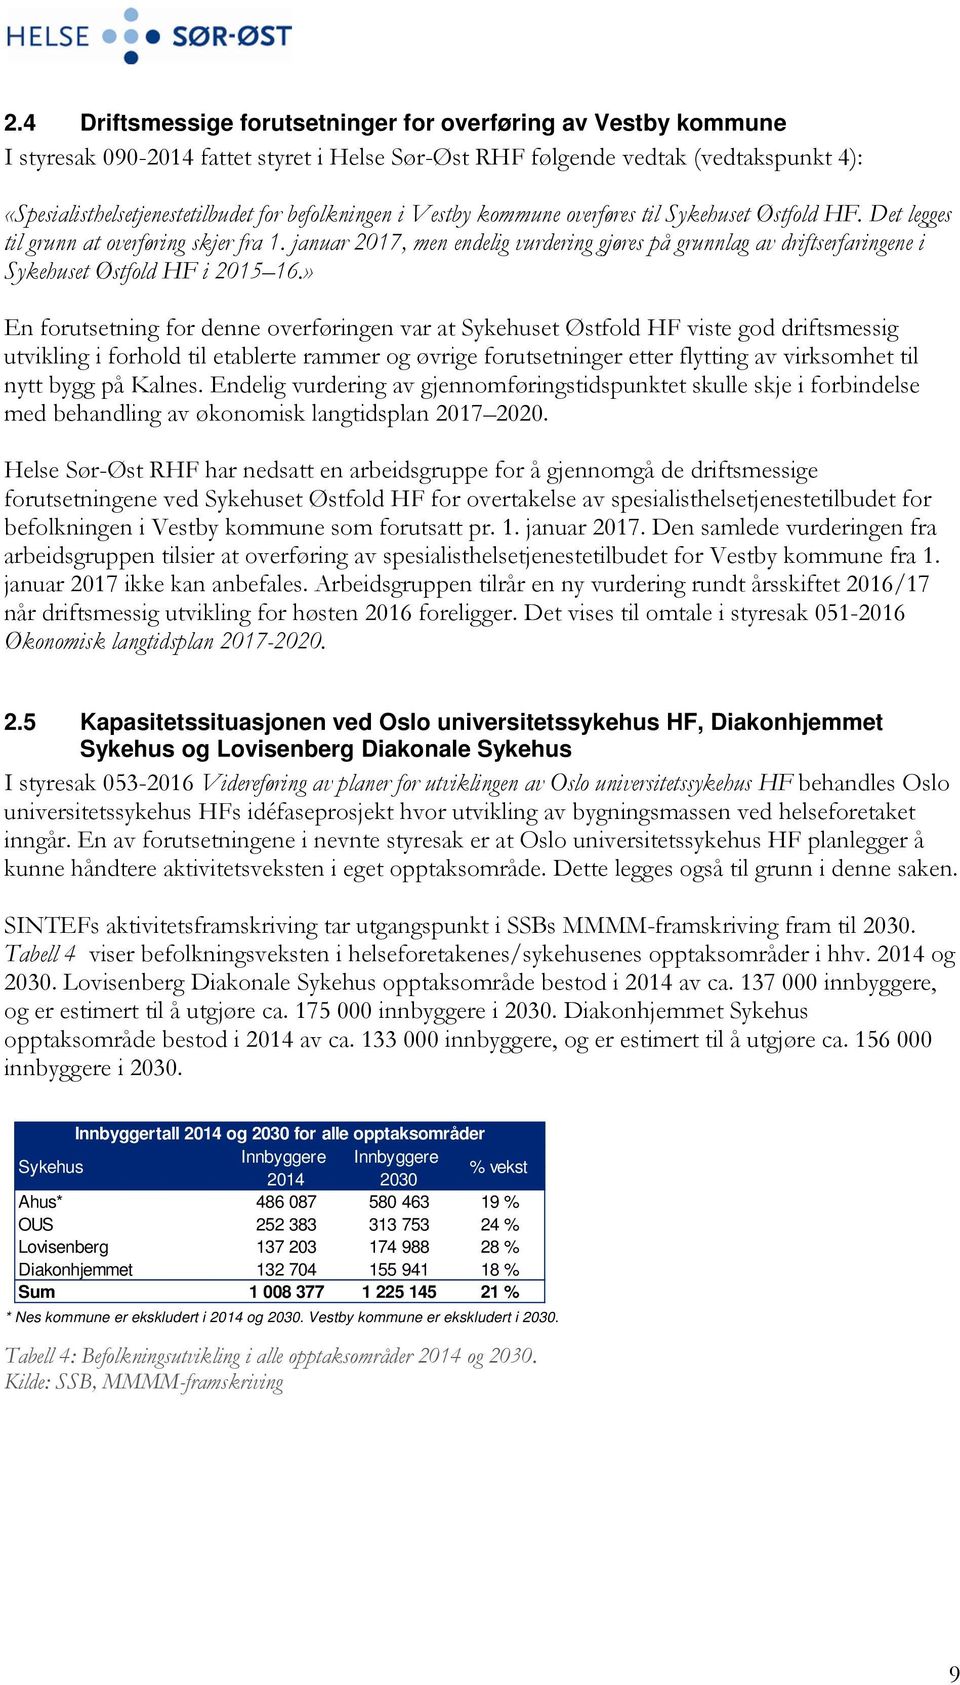 januar 2017, men endelig vurdering gjøres på grunnlag av driftserfaringene i Sykehuset Østfold HF i 2015 16.